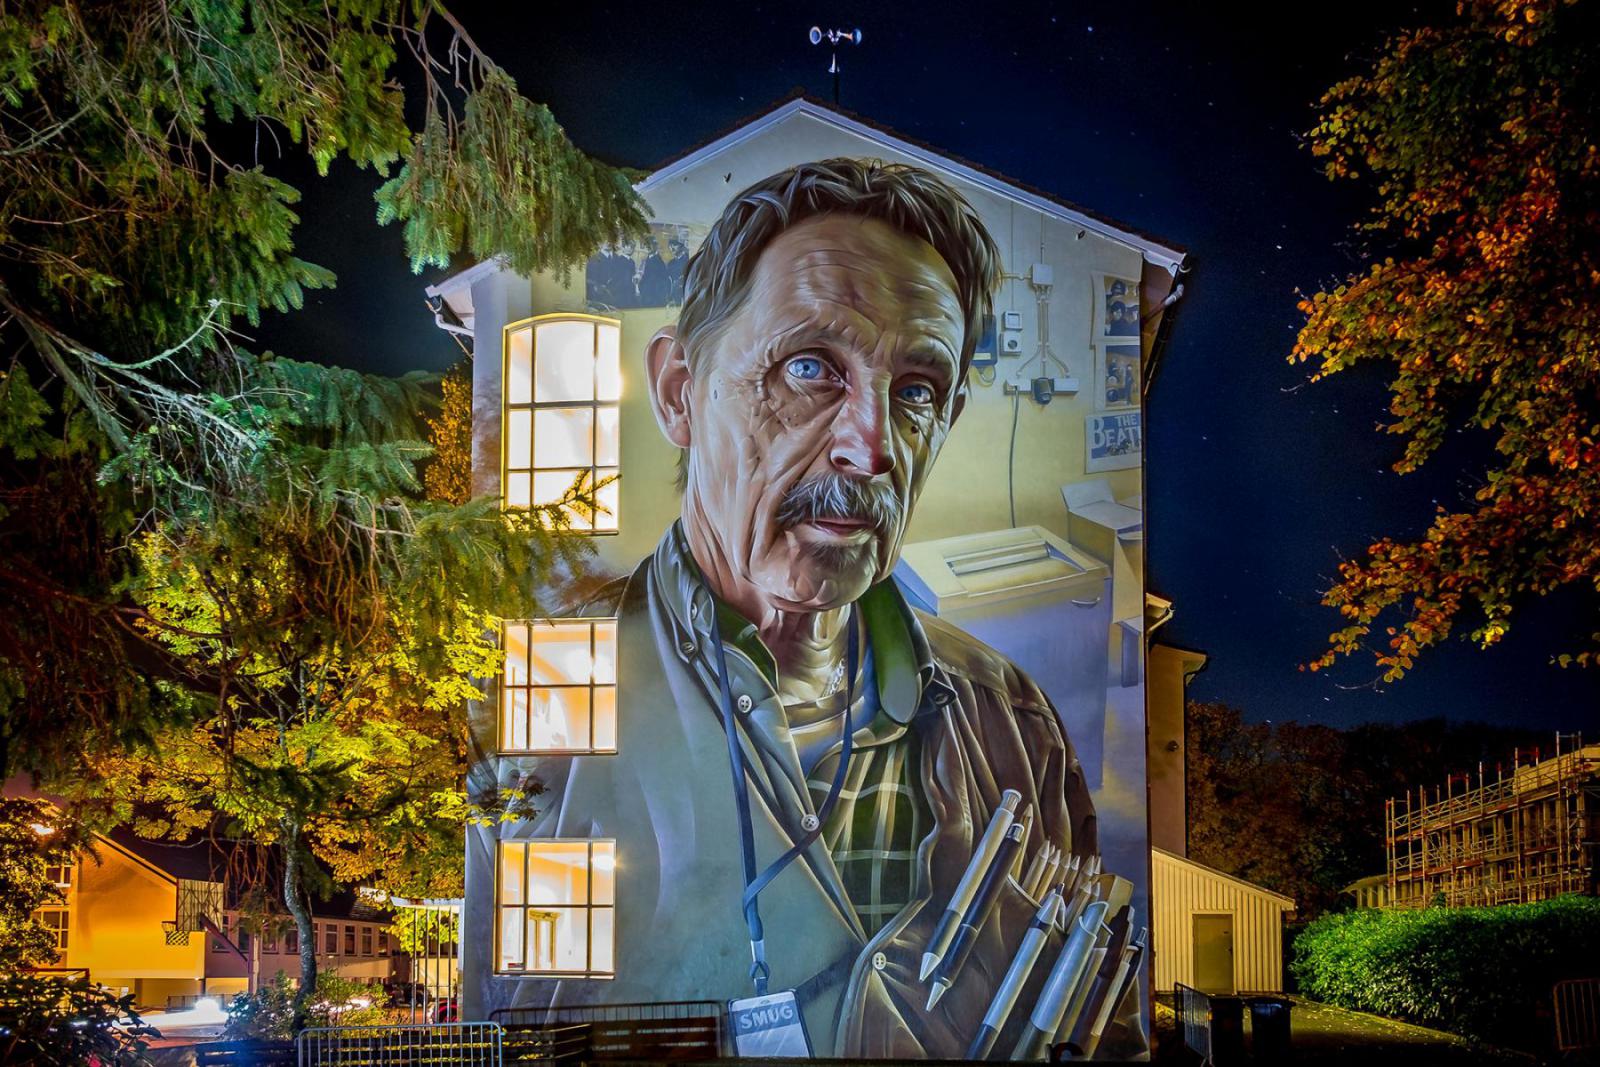 Nuart staat bekend om de vele street art dat het heeft gebracht in Stavanger en omgeving